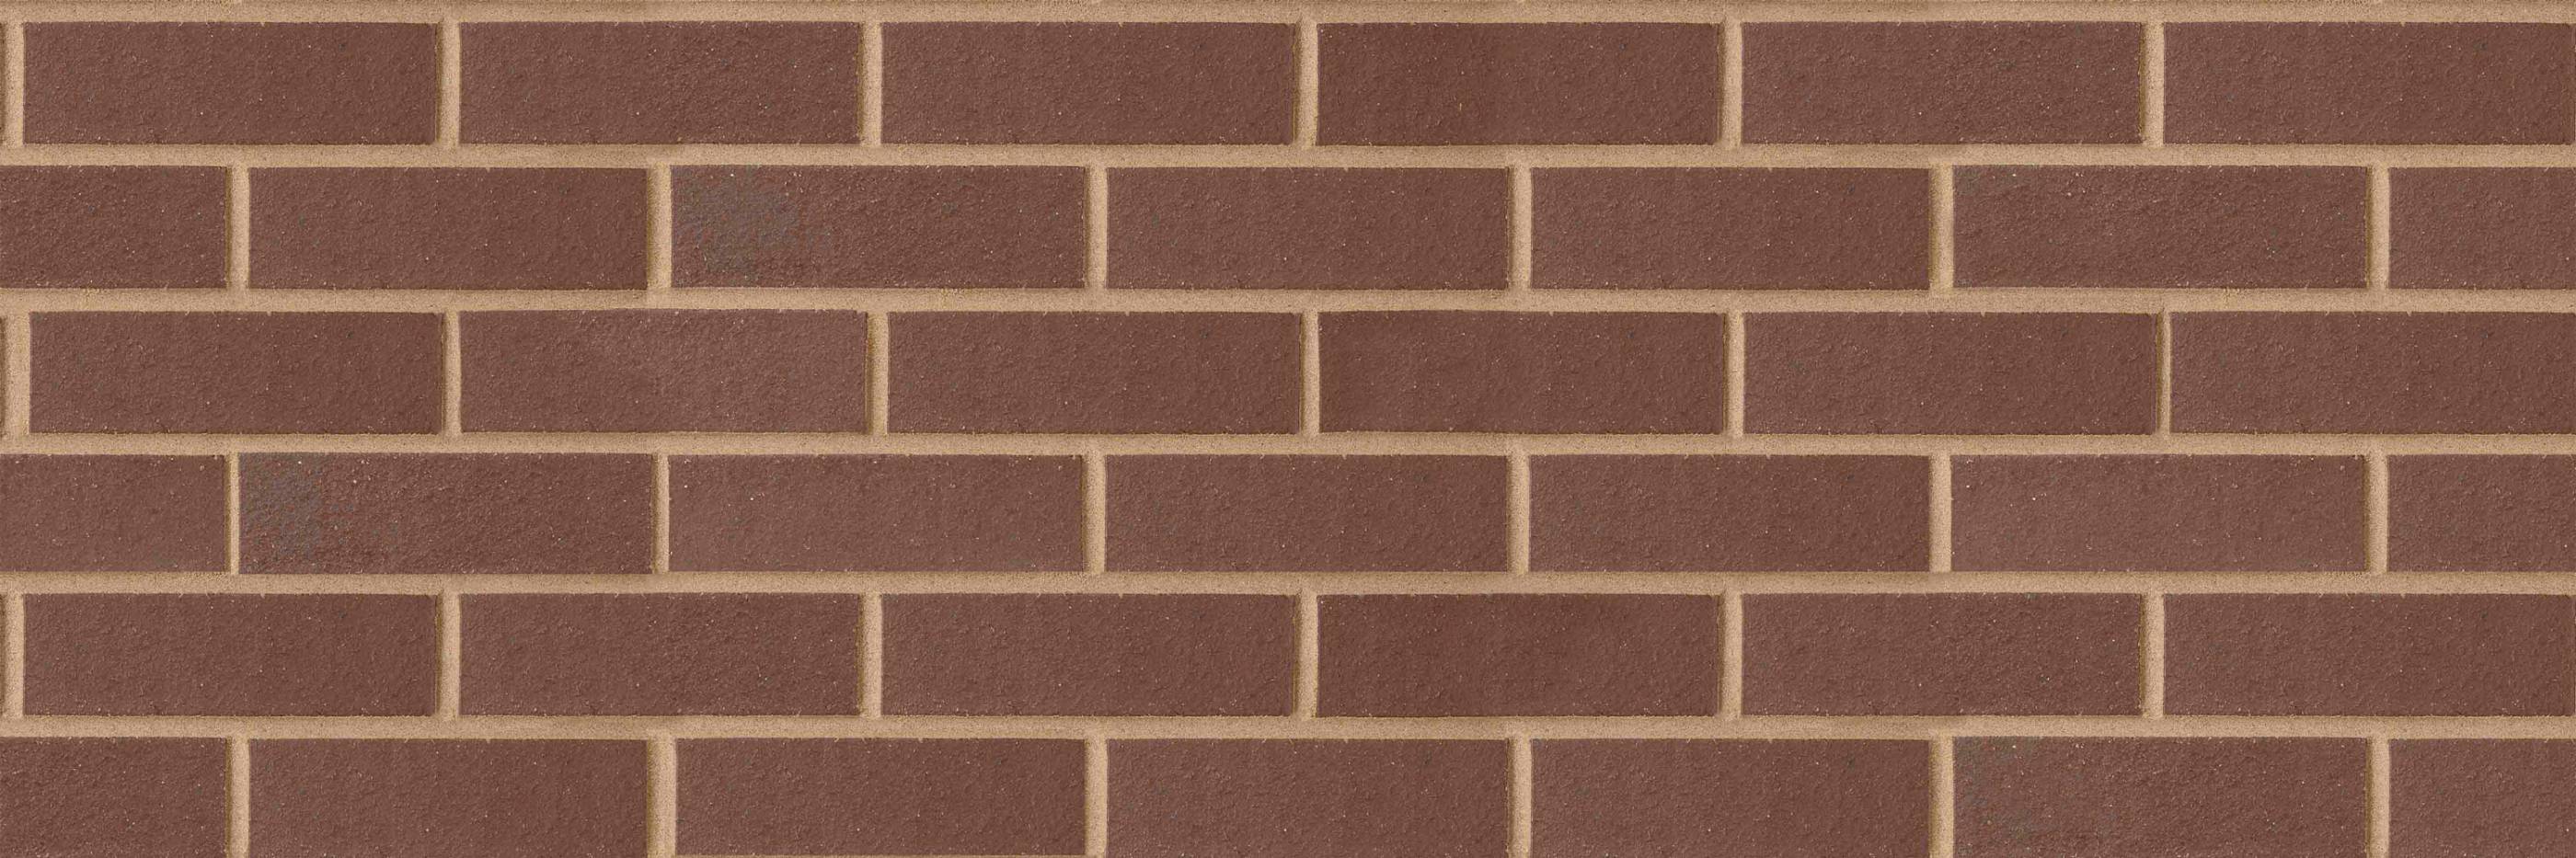 Blockleys Ipswich Smooth Clay Brick